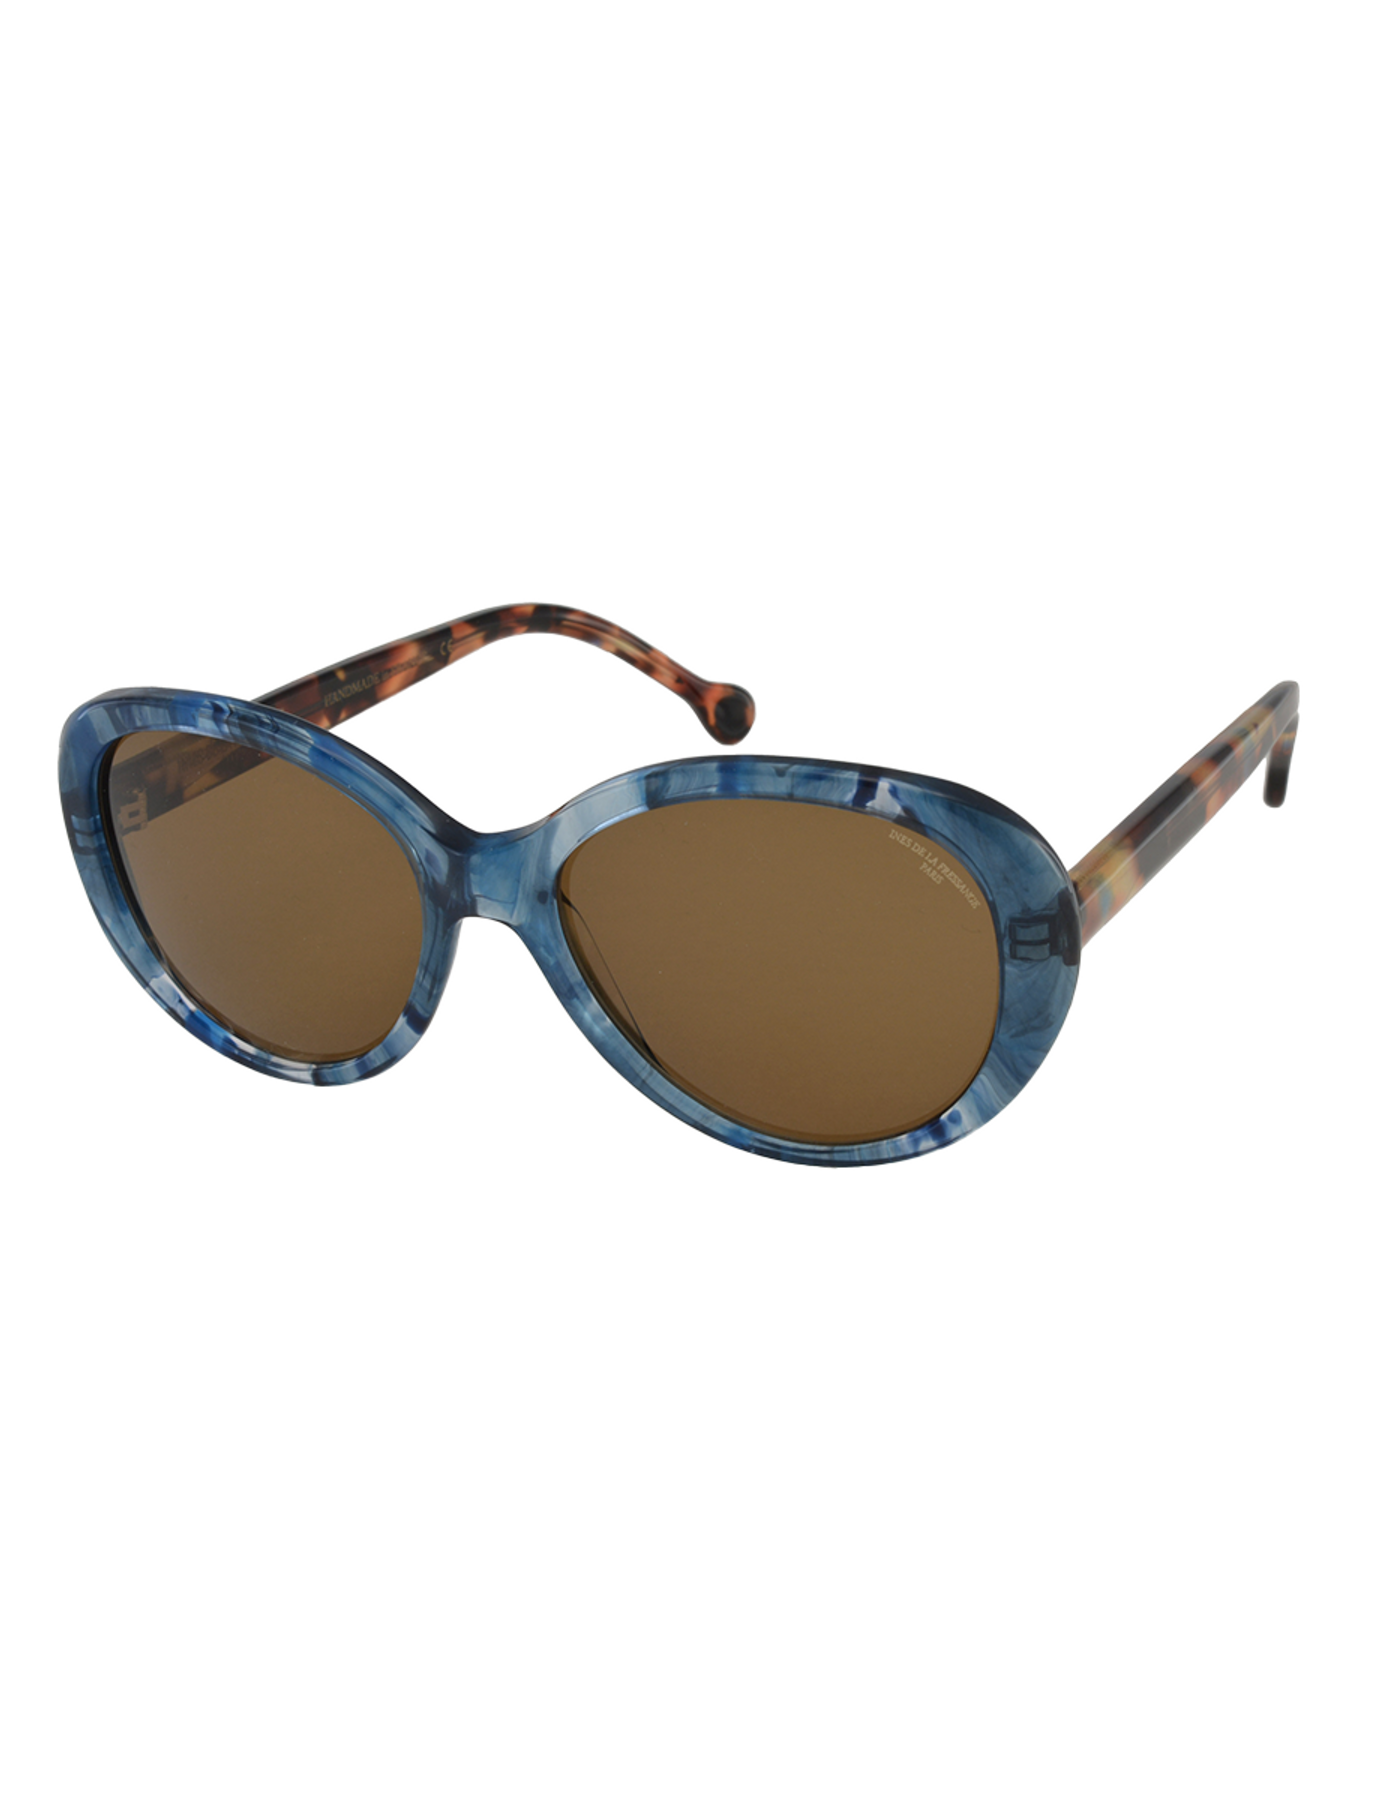 occhiali da sole-sofia-blu